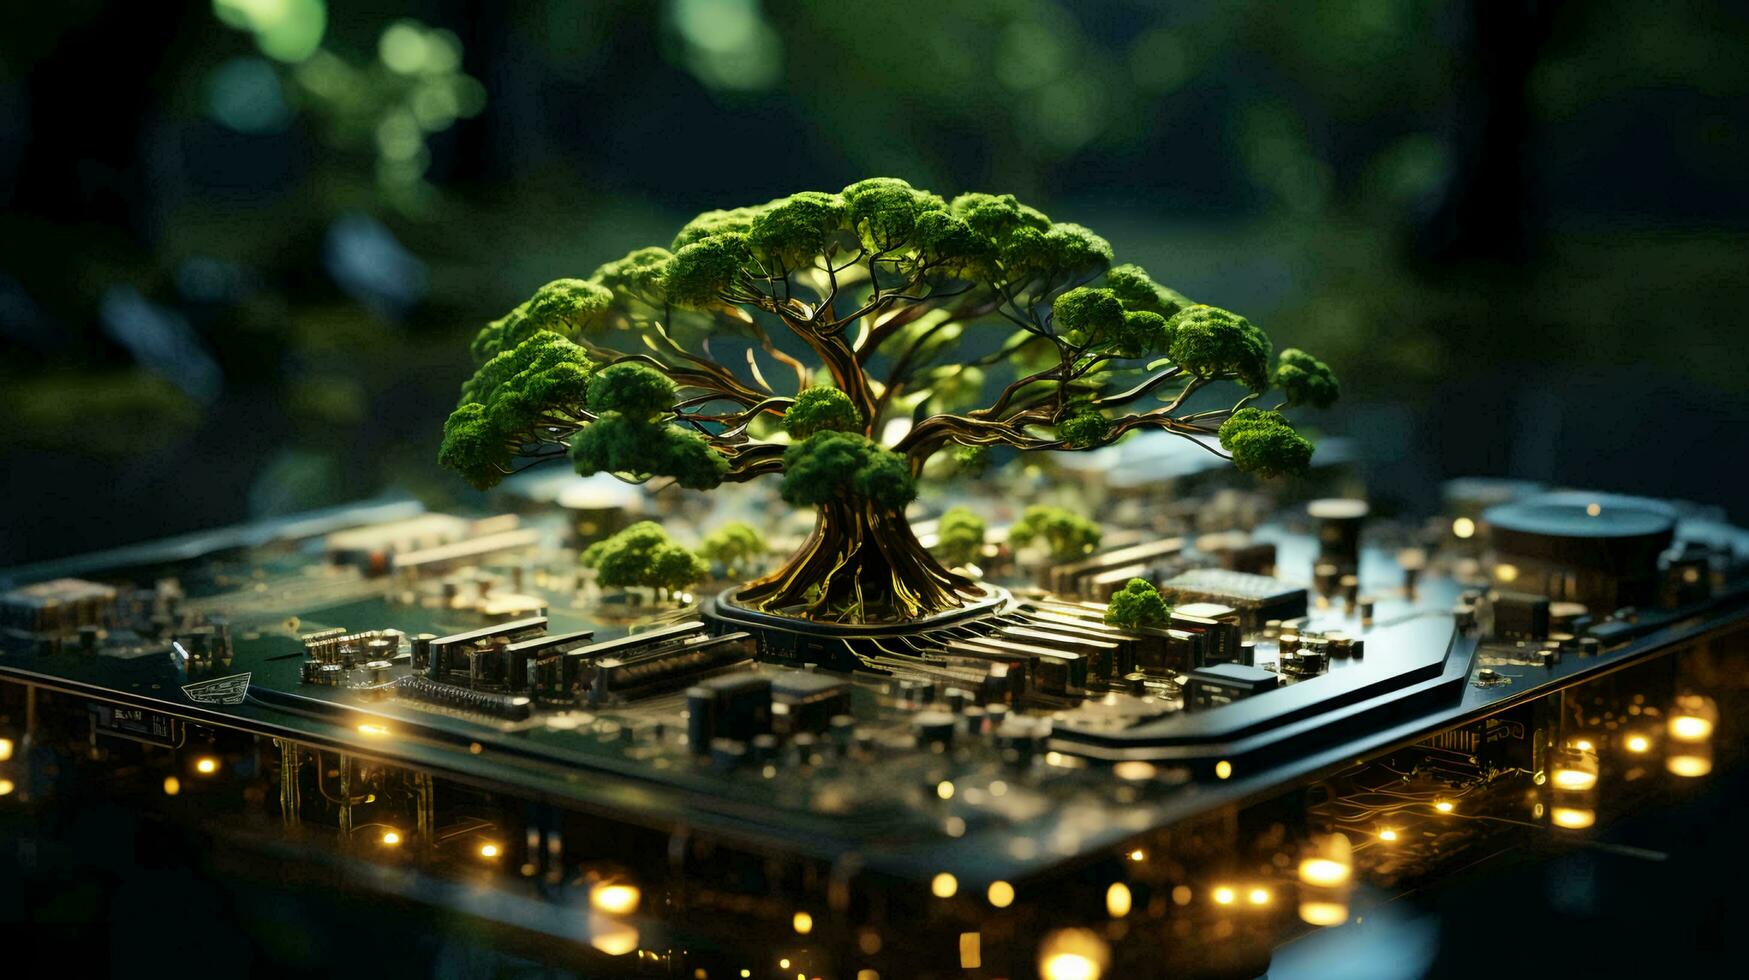 grön naturlig miljövänlig träd och dator teknologi på ett abstrakt avancerad trogen bakgrund av mikrochips och dator krets styrelser med transistorer foto